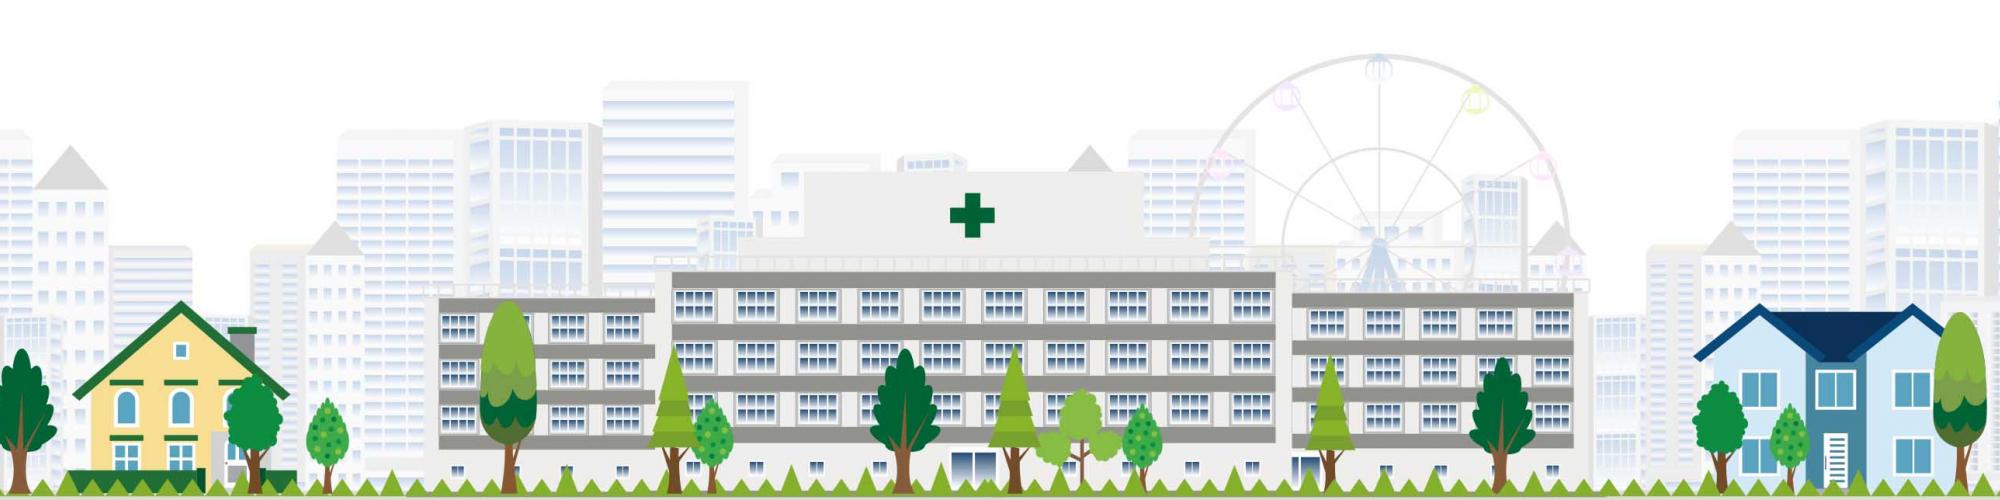 Städtisches Krankenhaus Eisenhüttenstadt GmbH